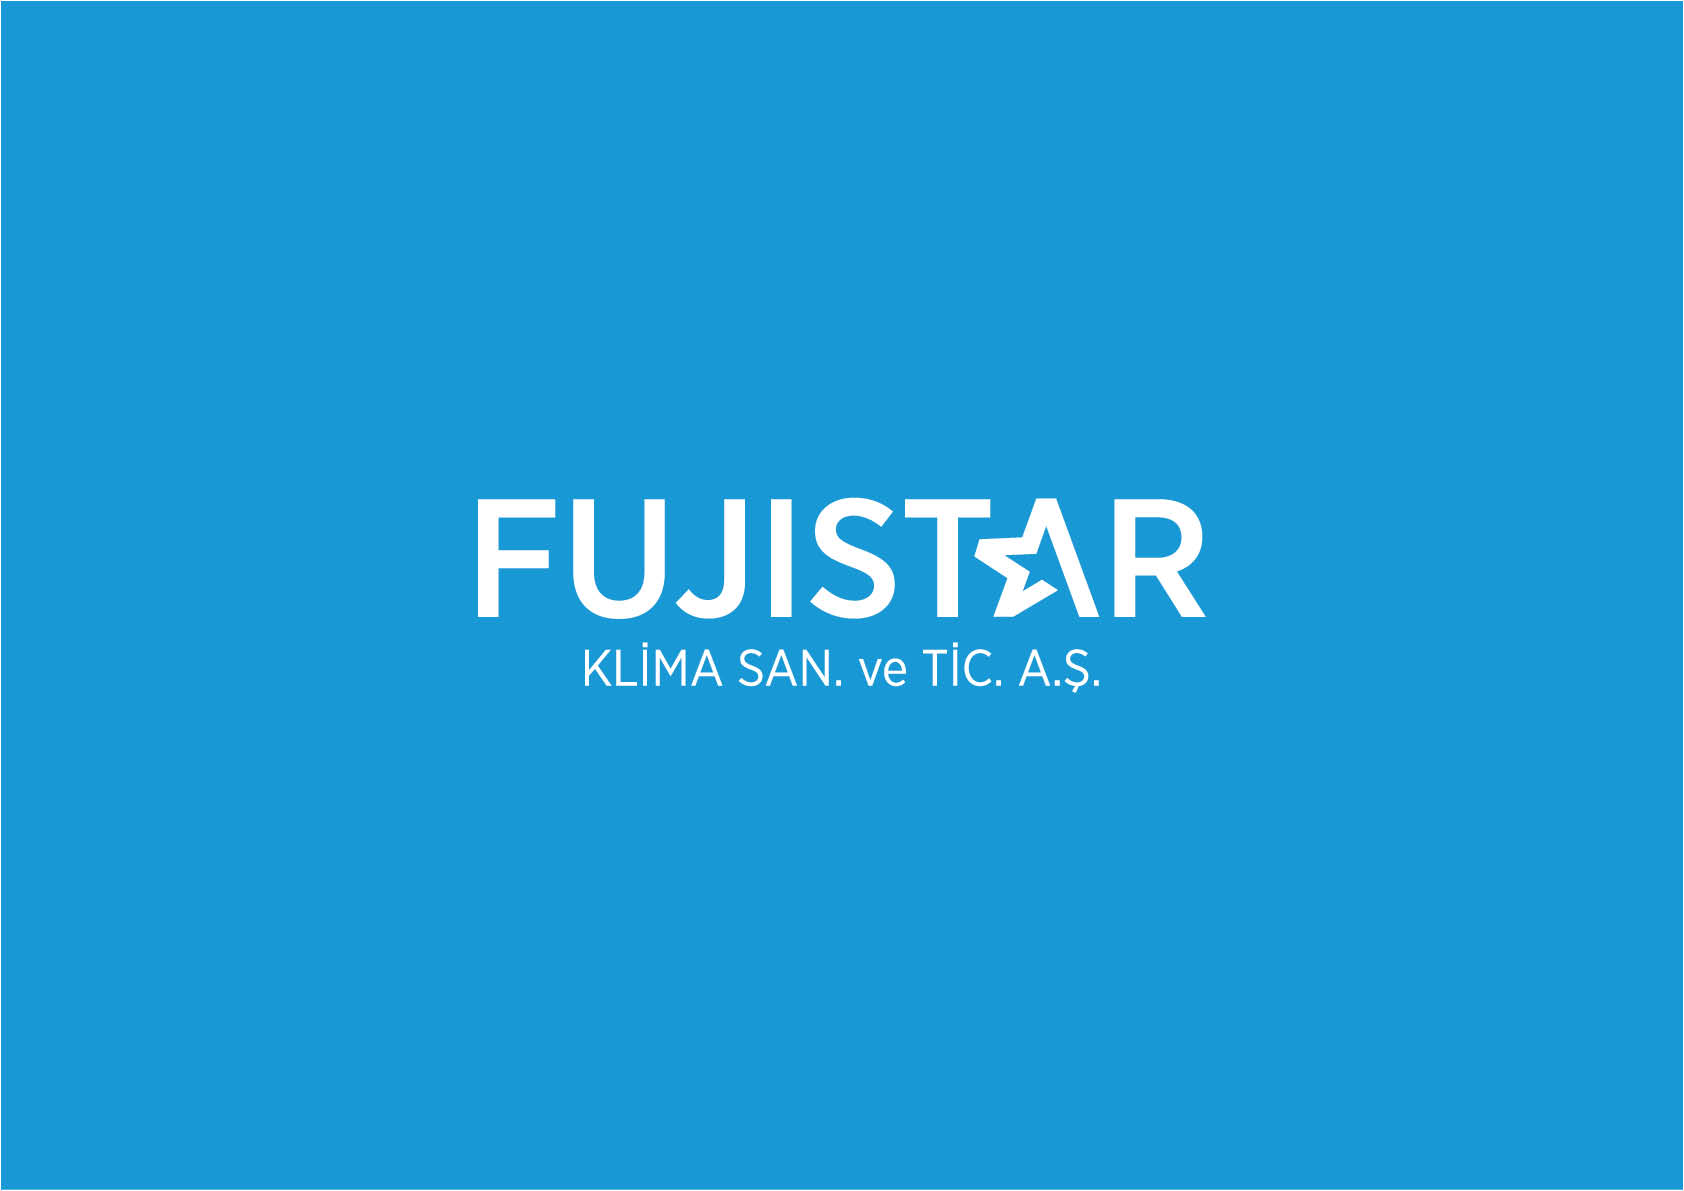 FujiStar_Kurumsal3